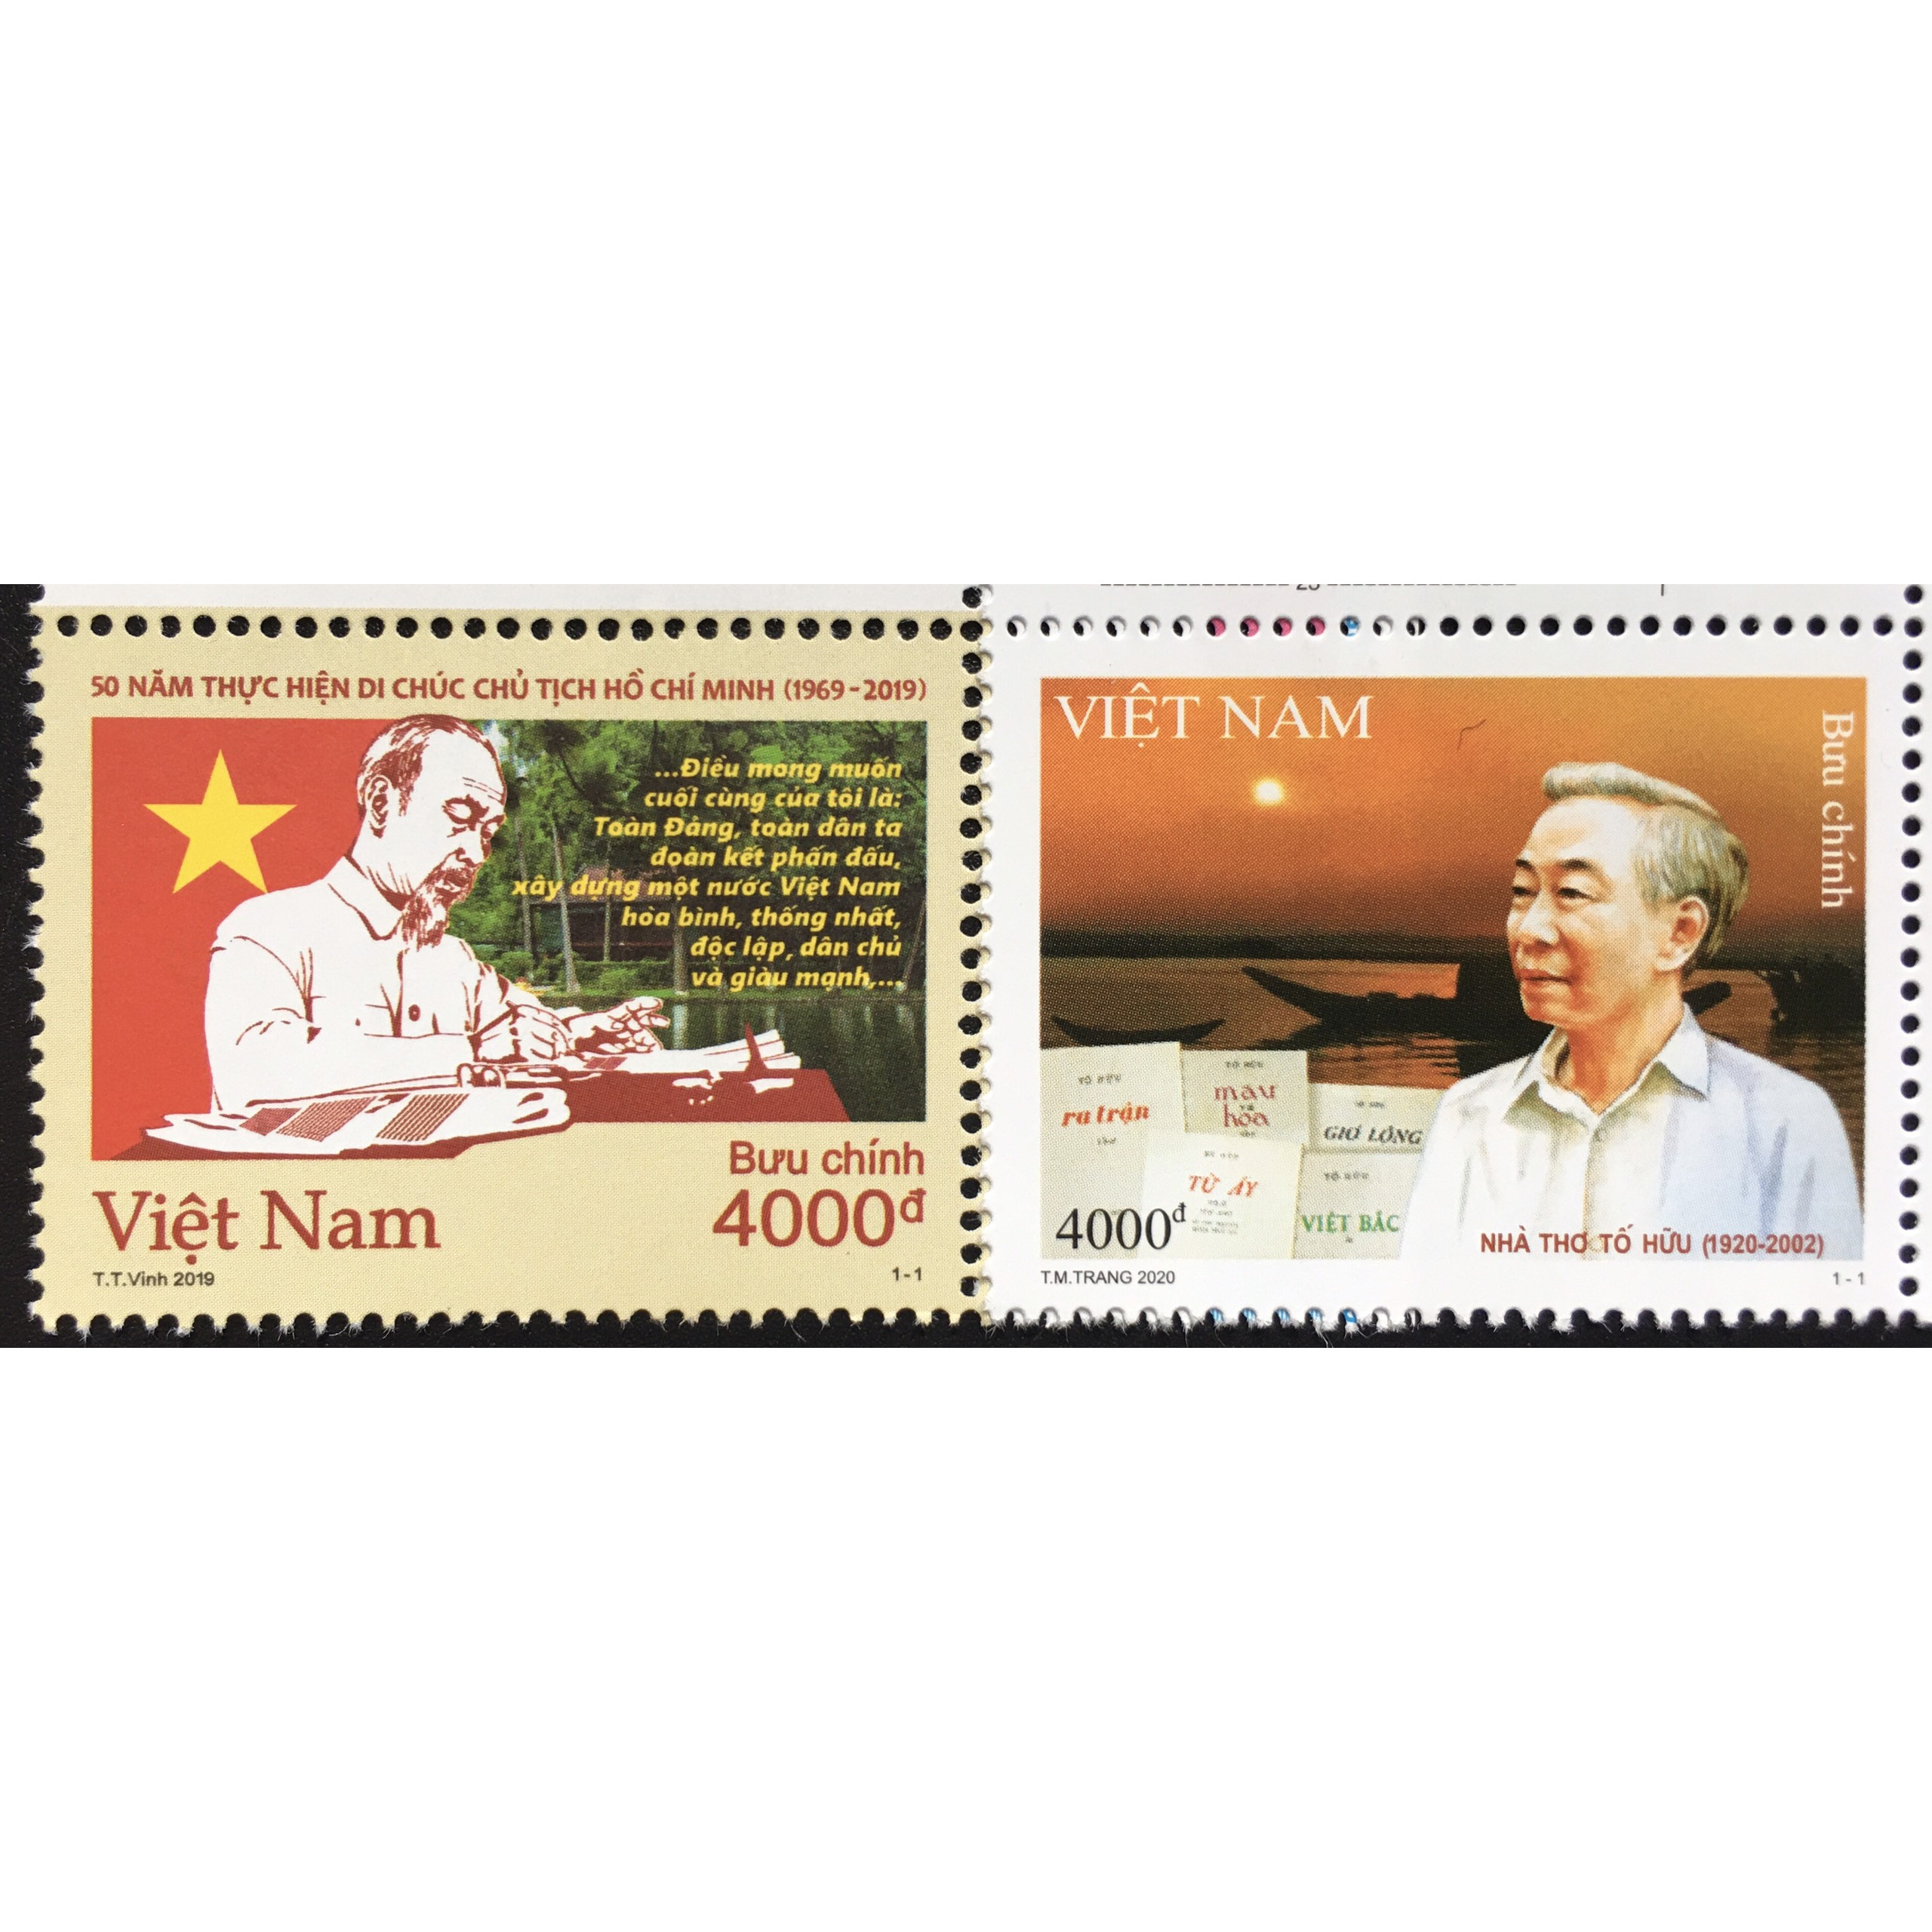 Bộ Tem Sưu Tầm Việt Nam 2020 Bác Hồ và Nhà Thơ Tố Hữu - 2 Stamps